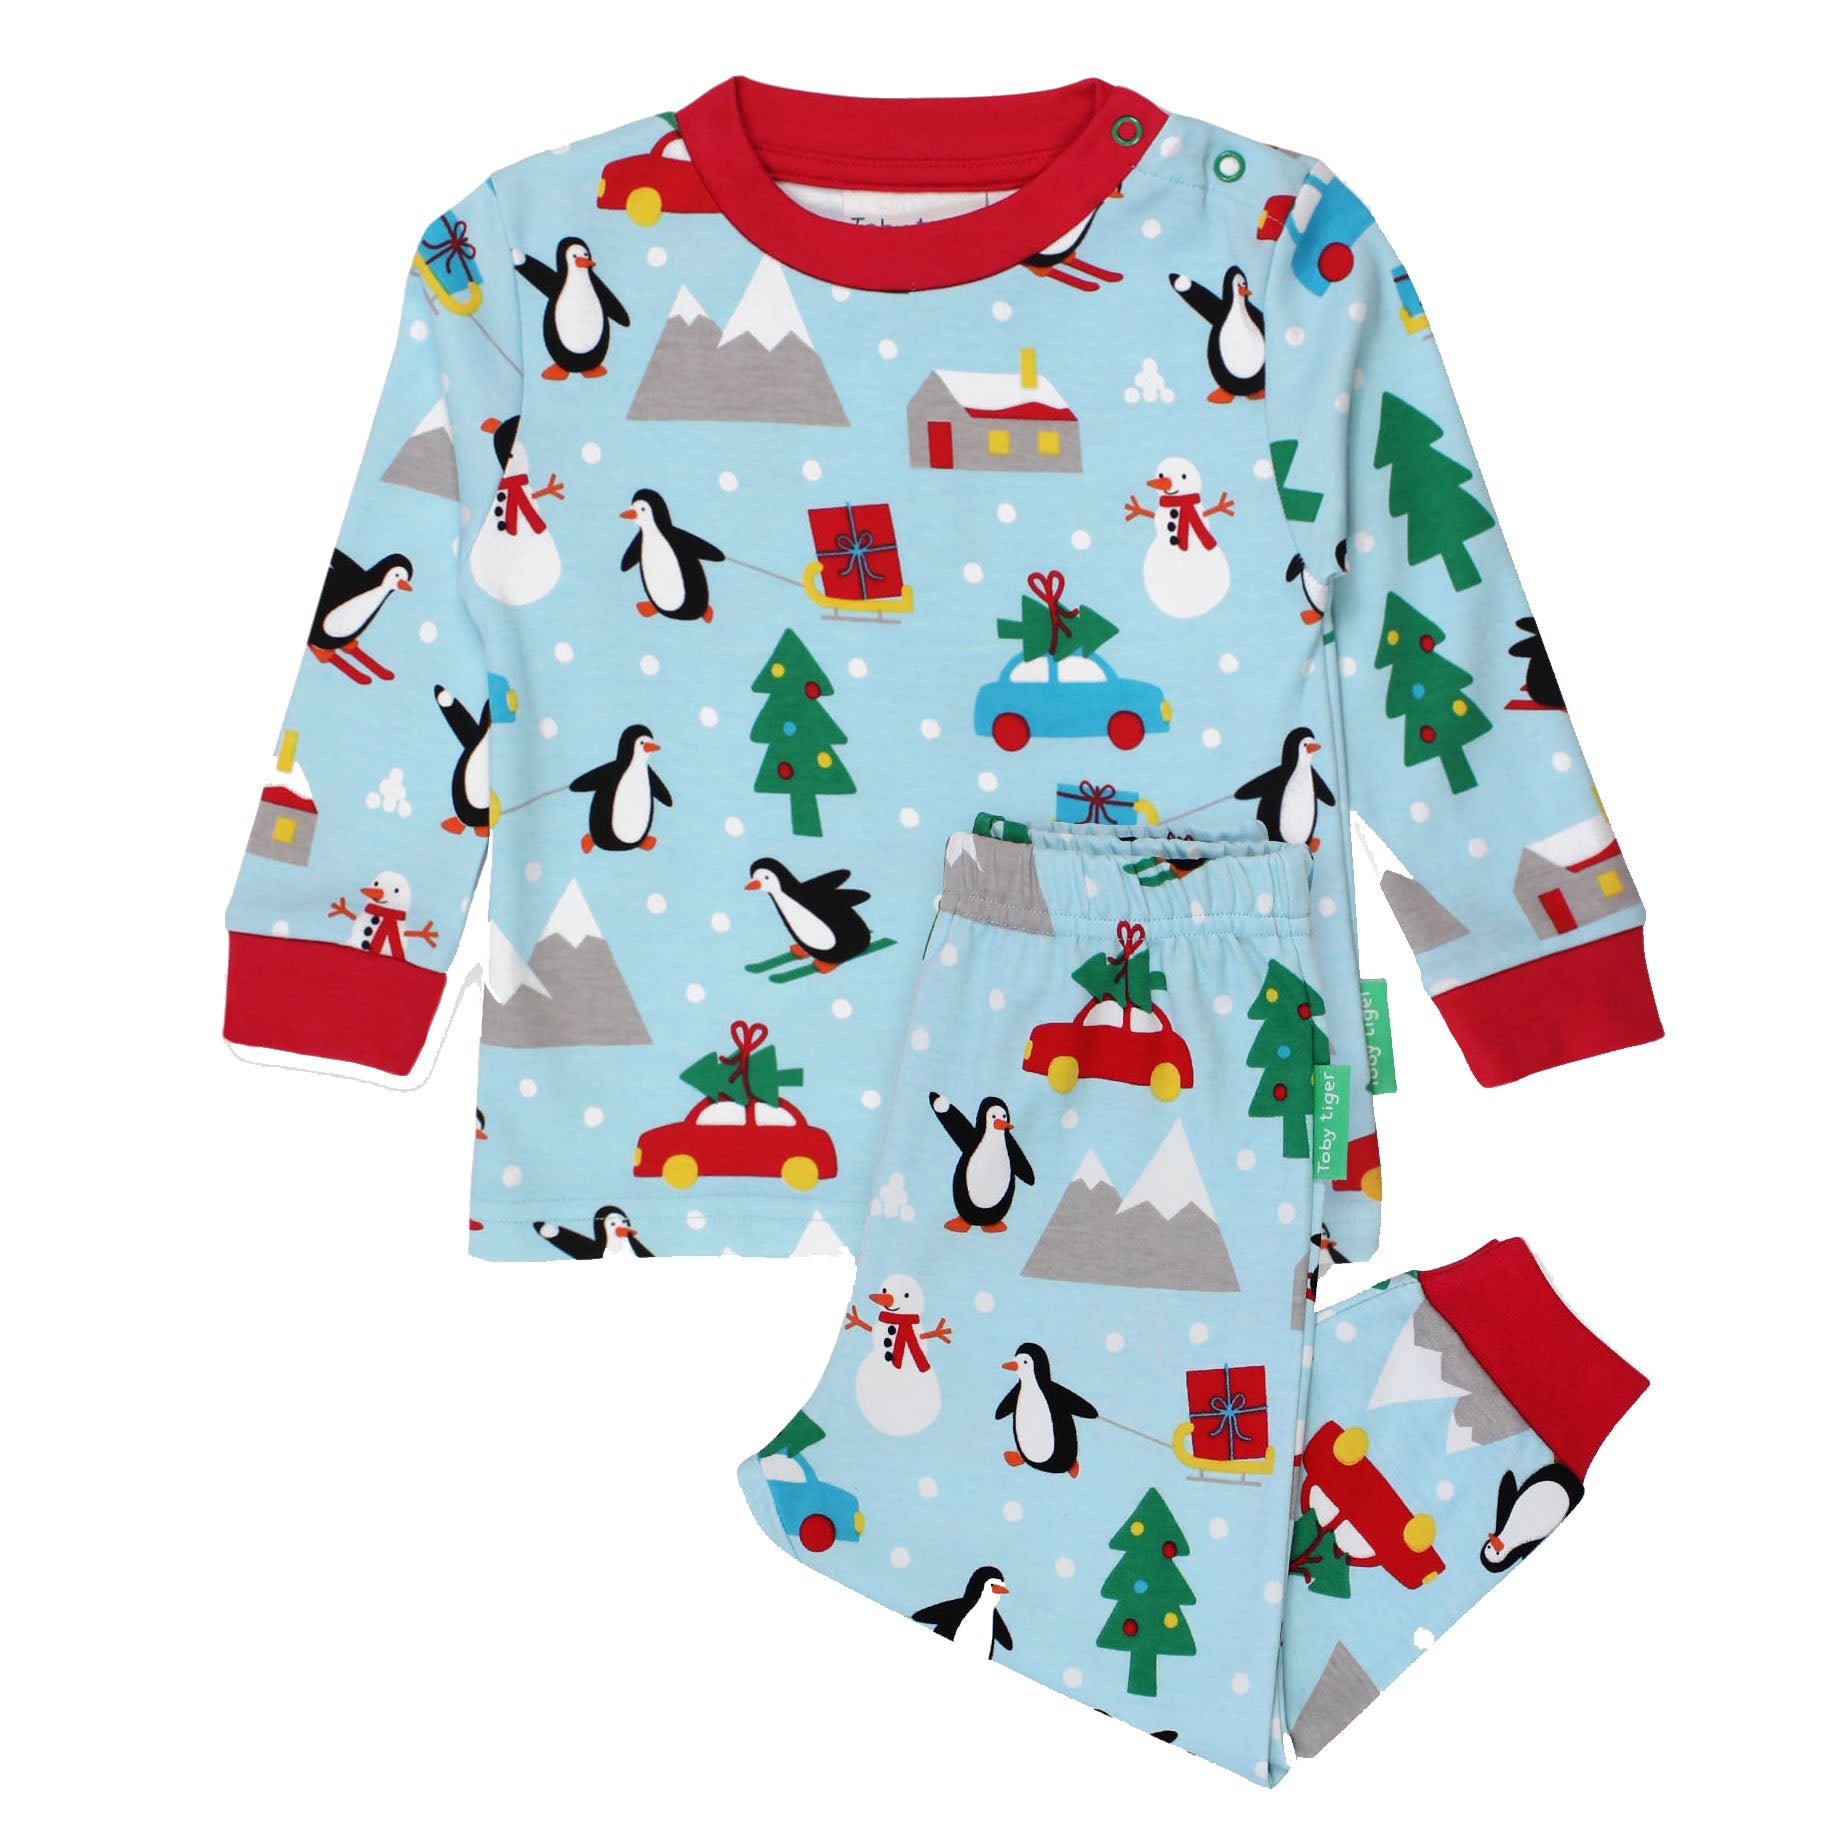 Toby Tiger Penguin's Christmas print pajamas